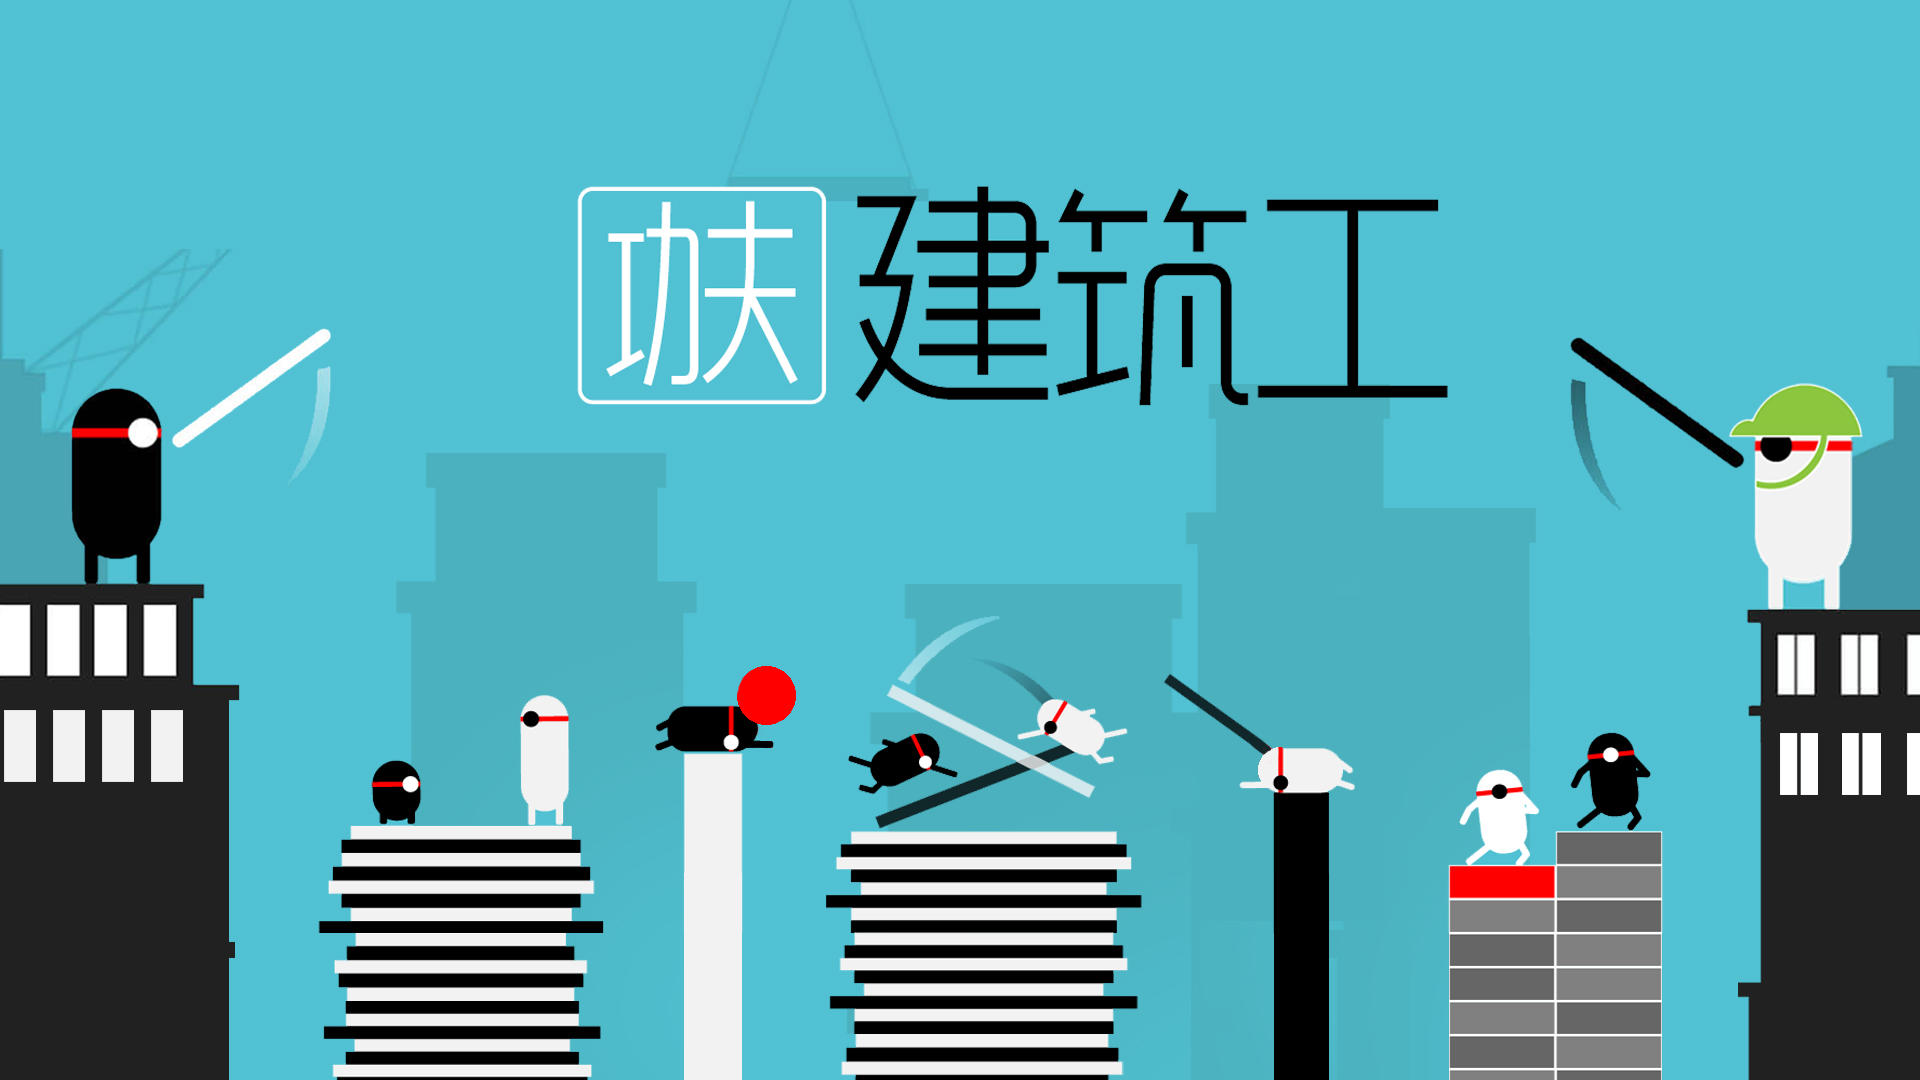 Banner of công nhân xây dựng kung fu 